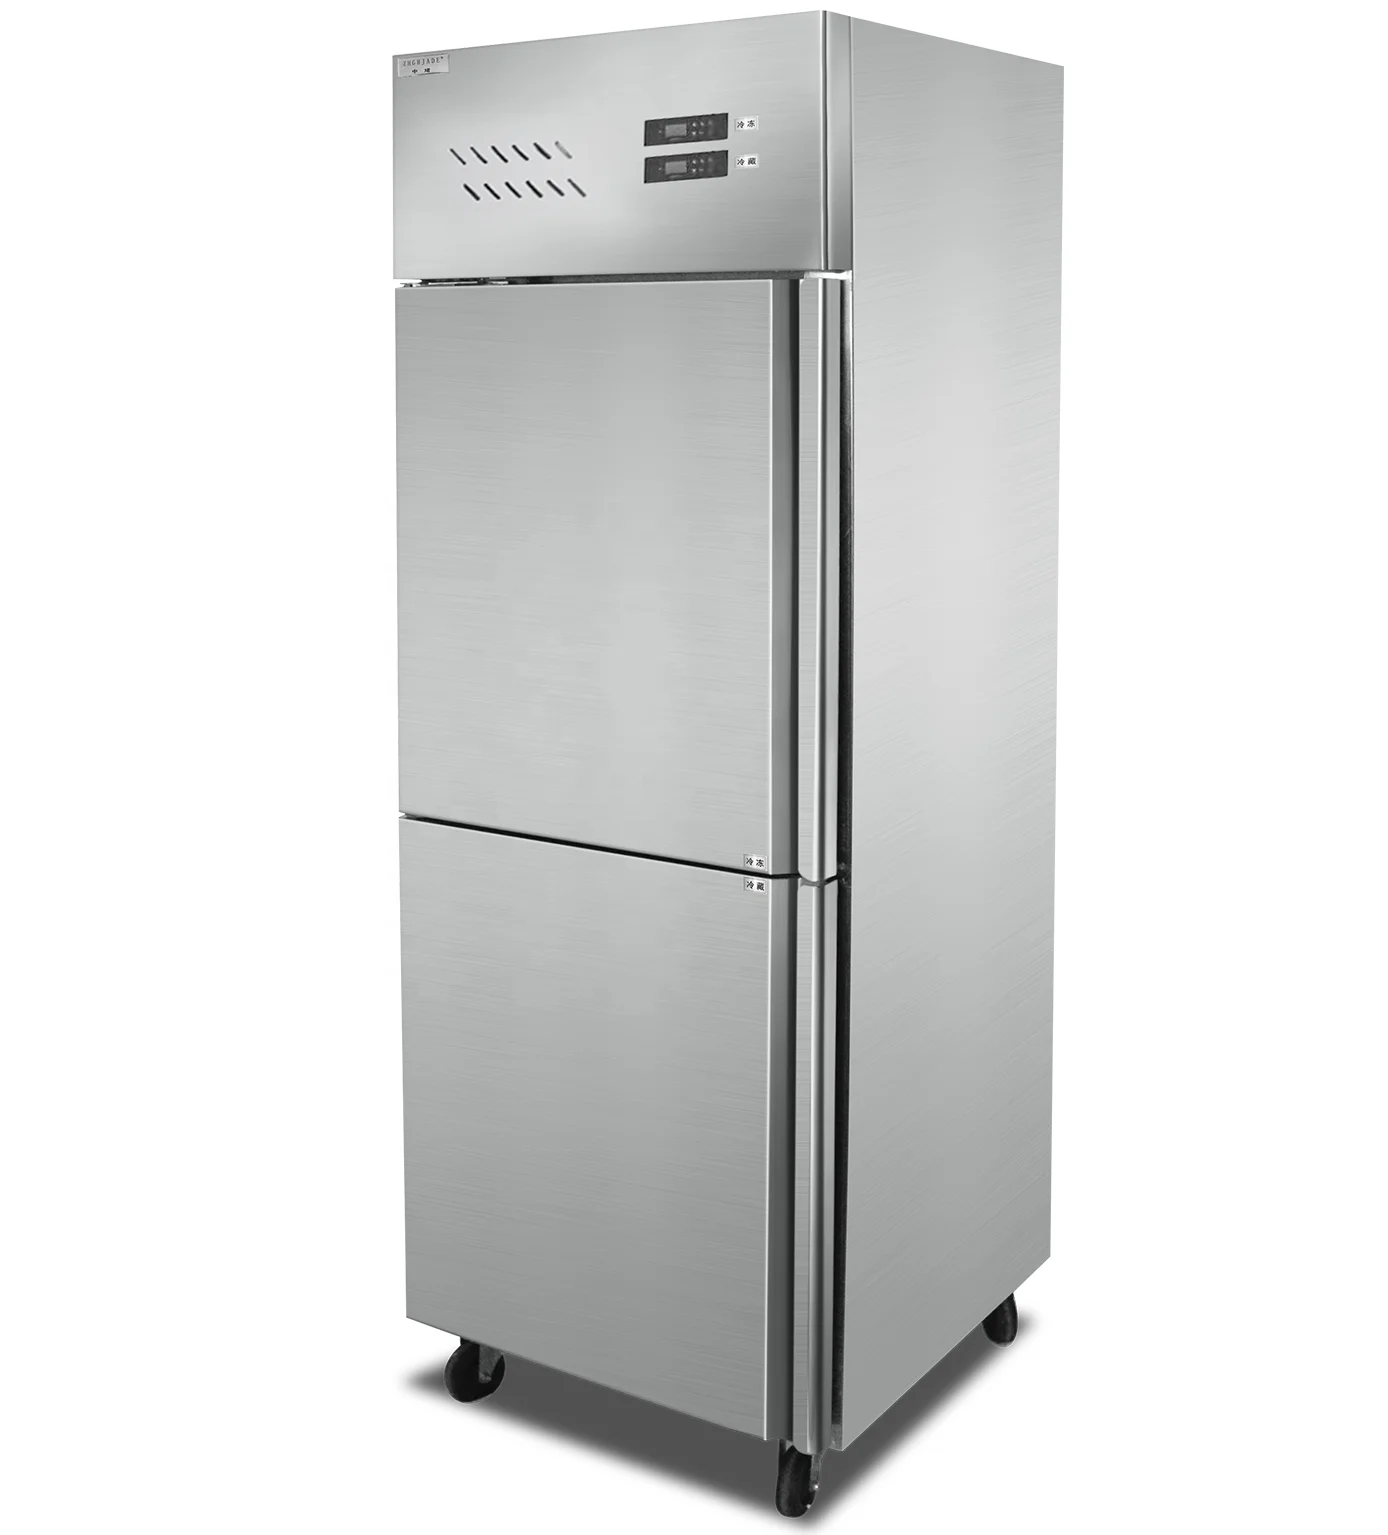 

Restaurant Commercial Refrigerators Upright Freezer Vertical Fridge Geladeira Frigo Nevera Refrigerador Refrigeration Equipment